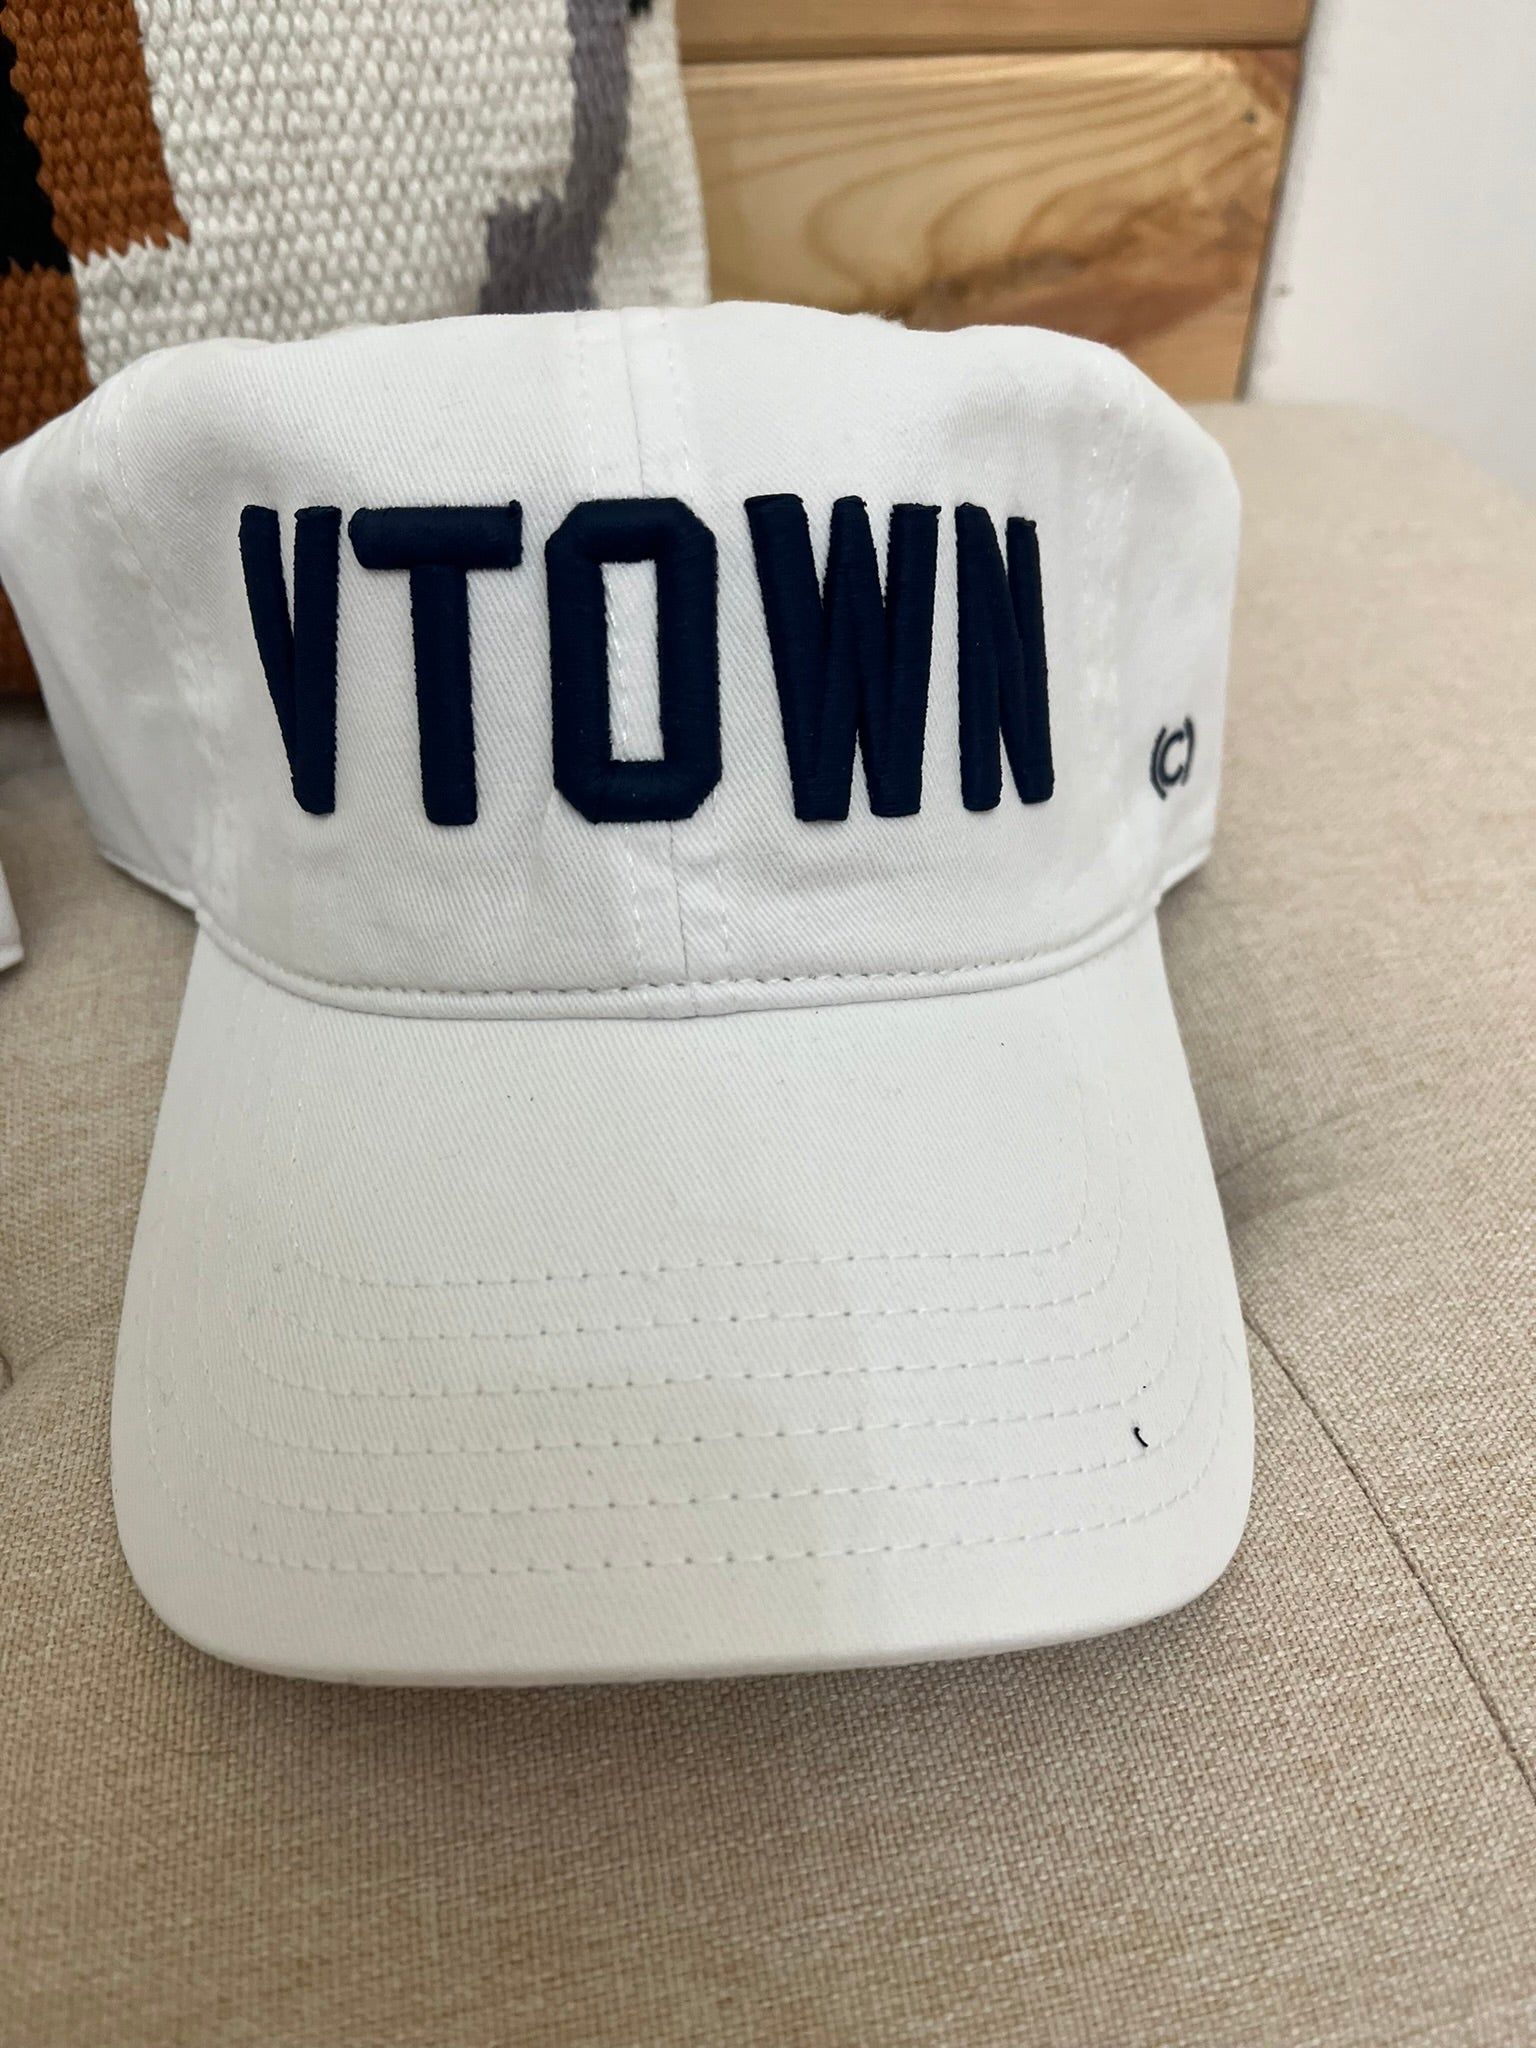 VTown Vermilion Hat